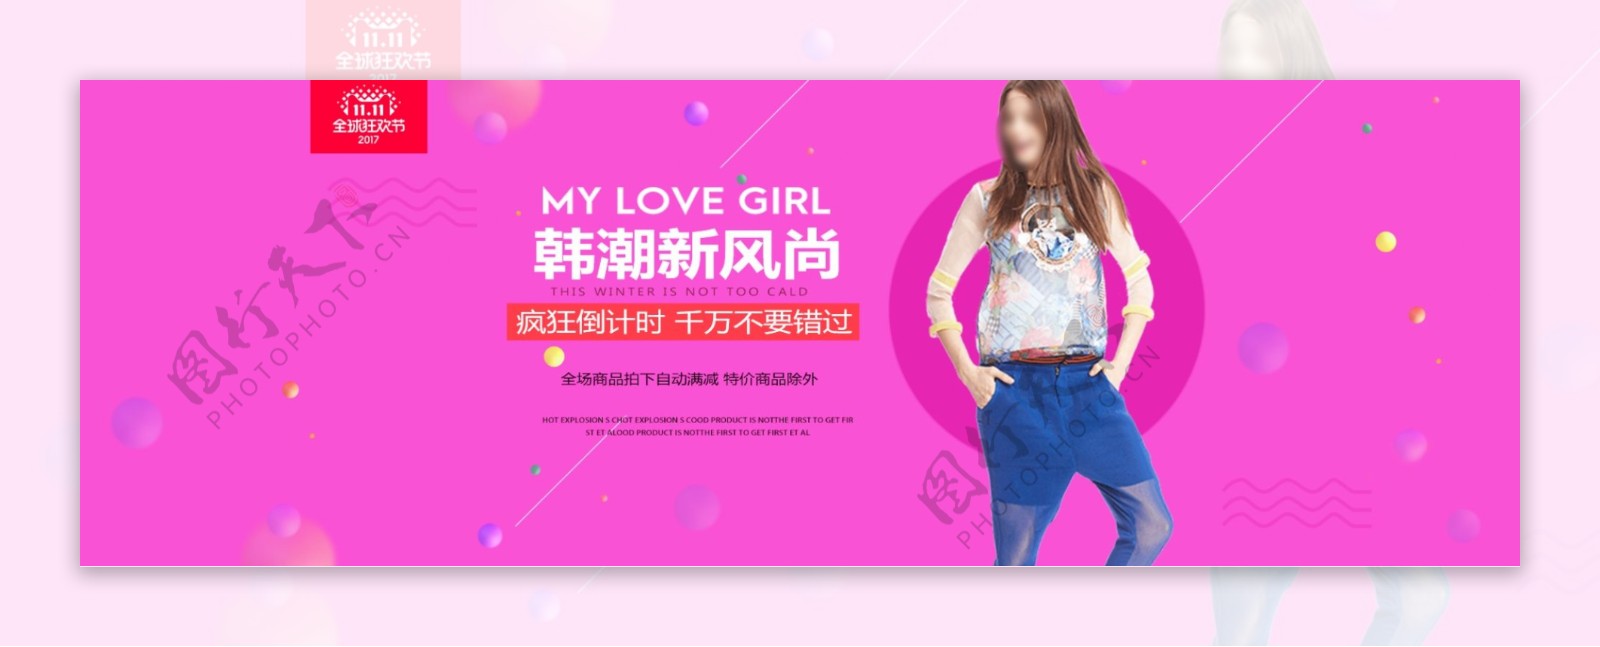 紫色天猫双11韩潮新风尚女装特卖电商海报